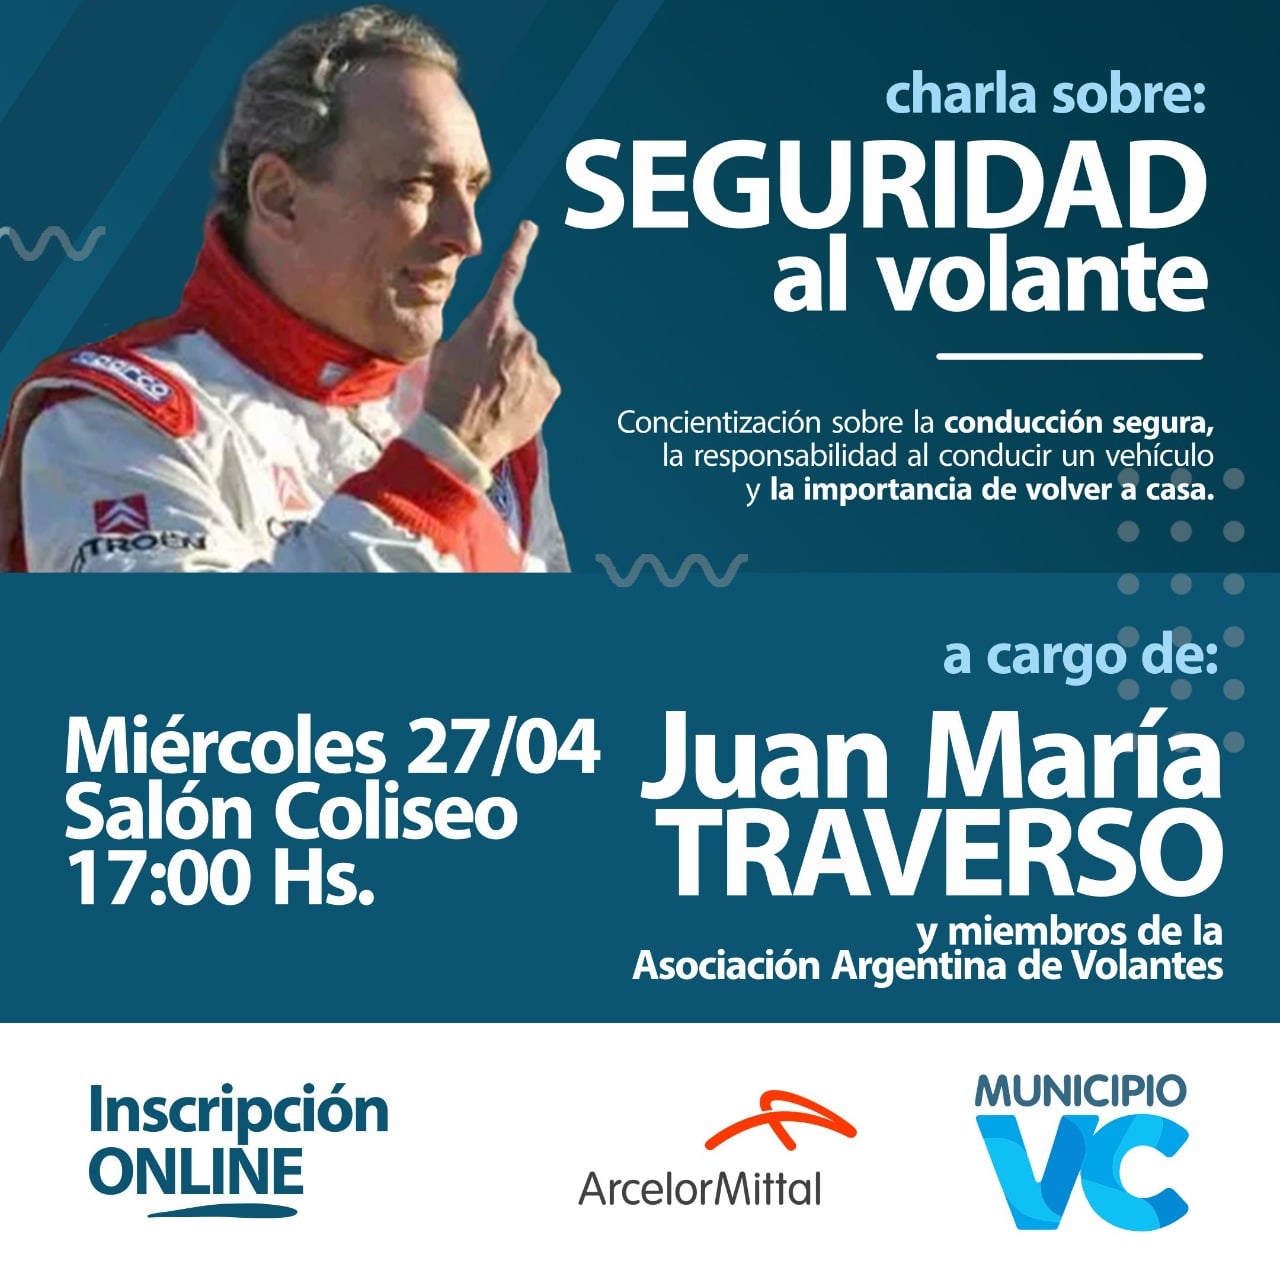 Charla sobre seguridad al volante con Juan María Traverso